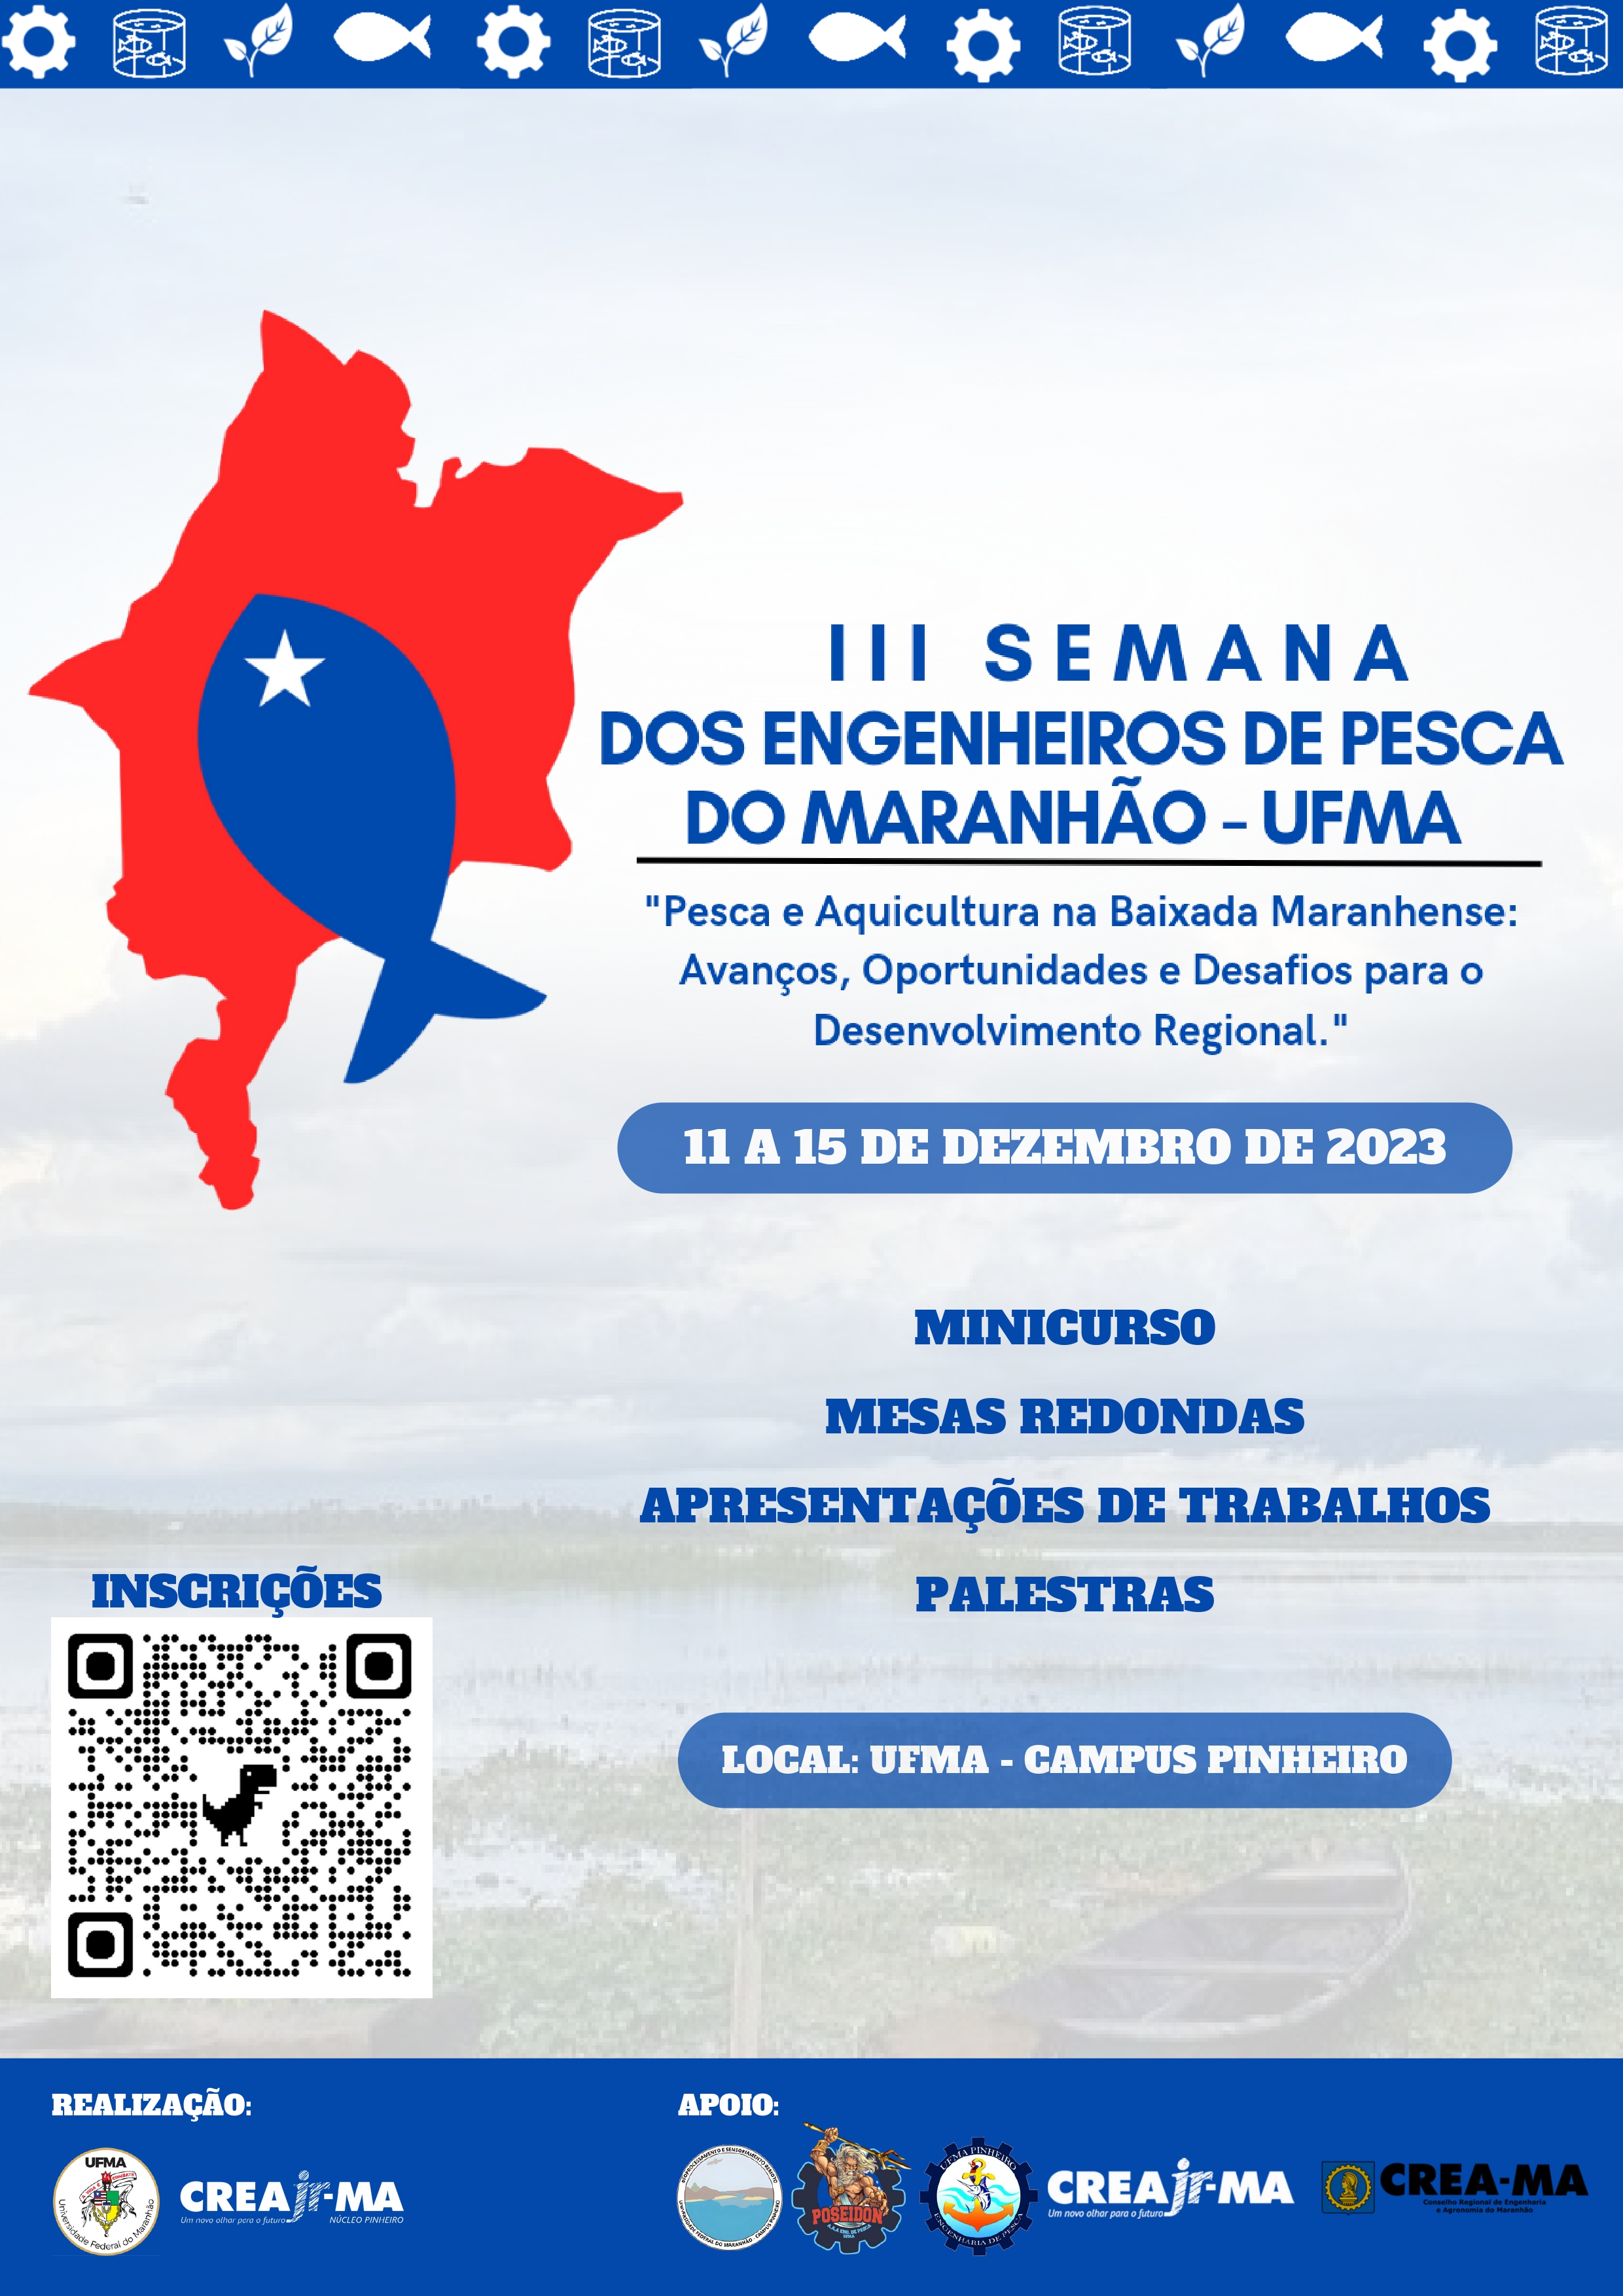 “III Semana de Engenheiros de Pesca do Maranhão” ocorre de 11 e 15 de dezembro, no campus da UFMA de Pinheiro